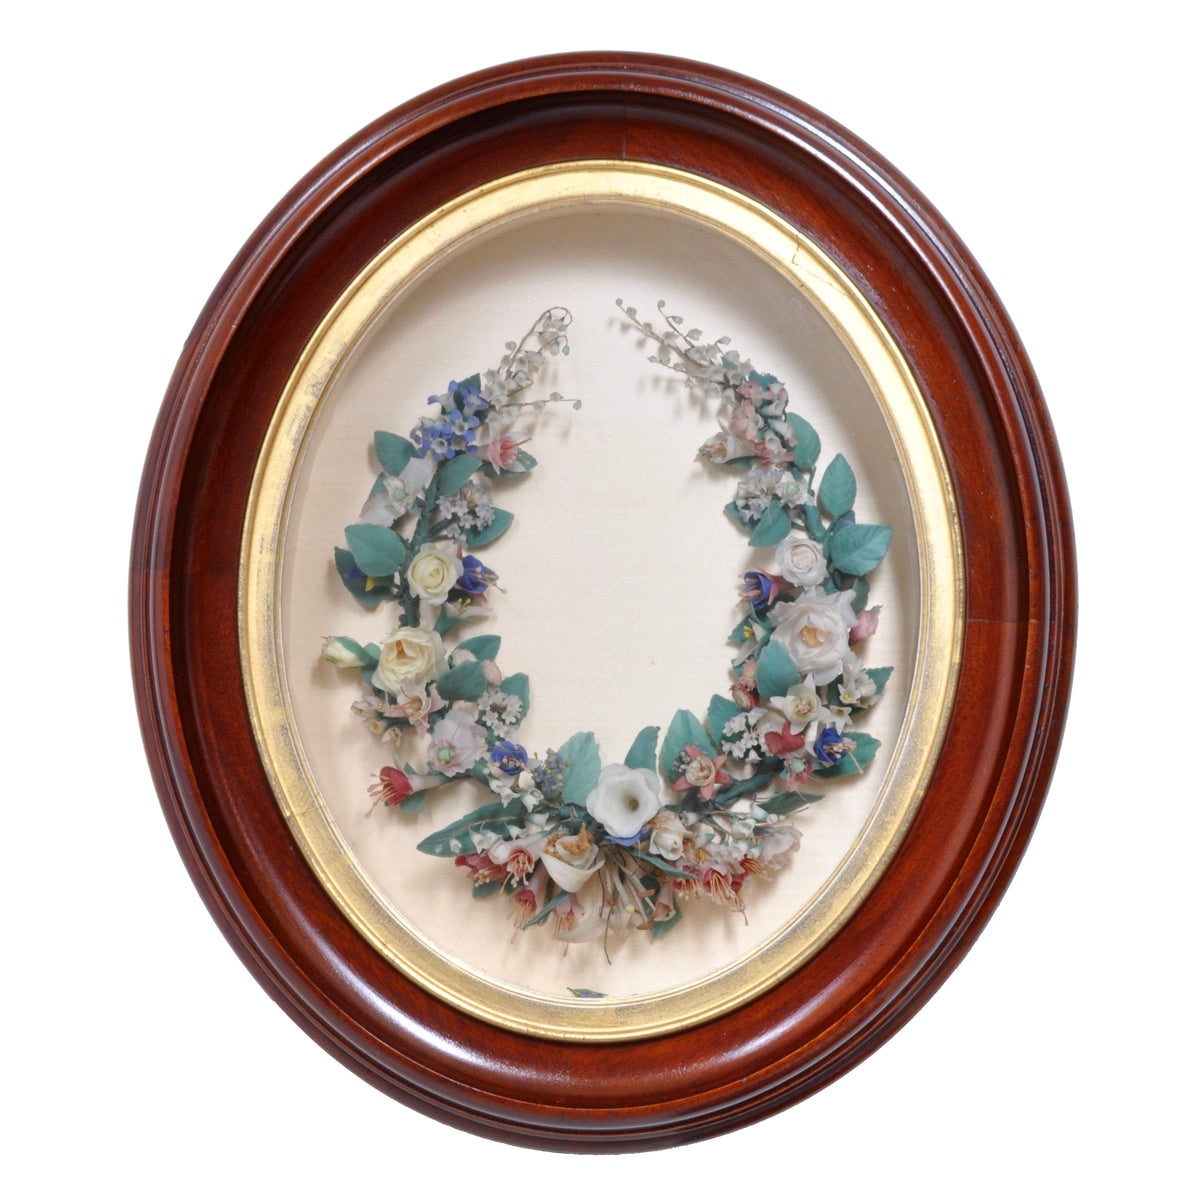 Antique Waxed Floral Wreath Memento Mori in Mahogany Frame, Circa 1860